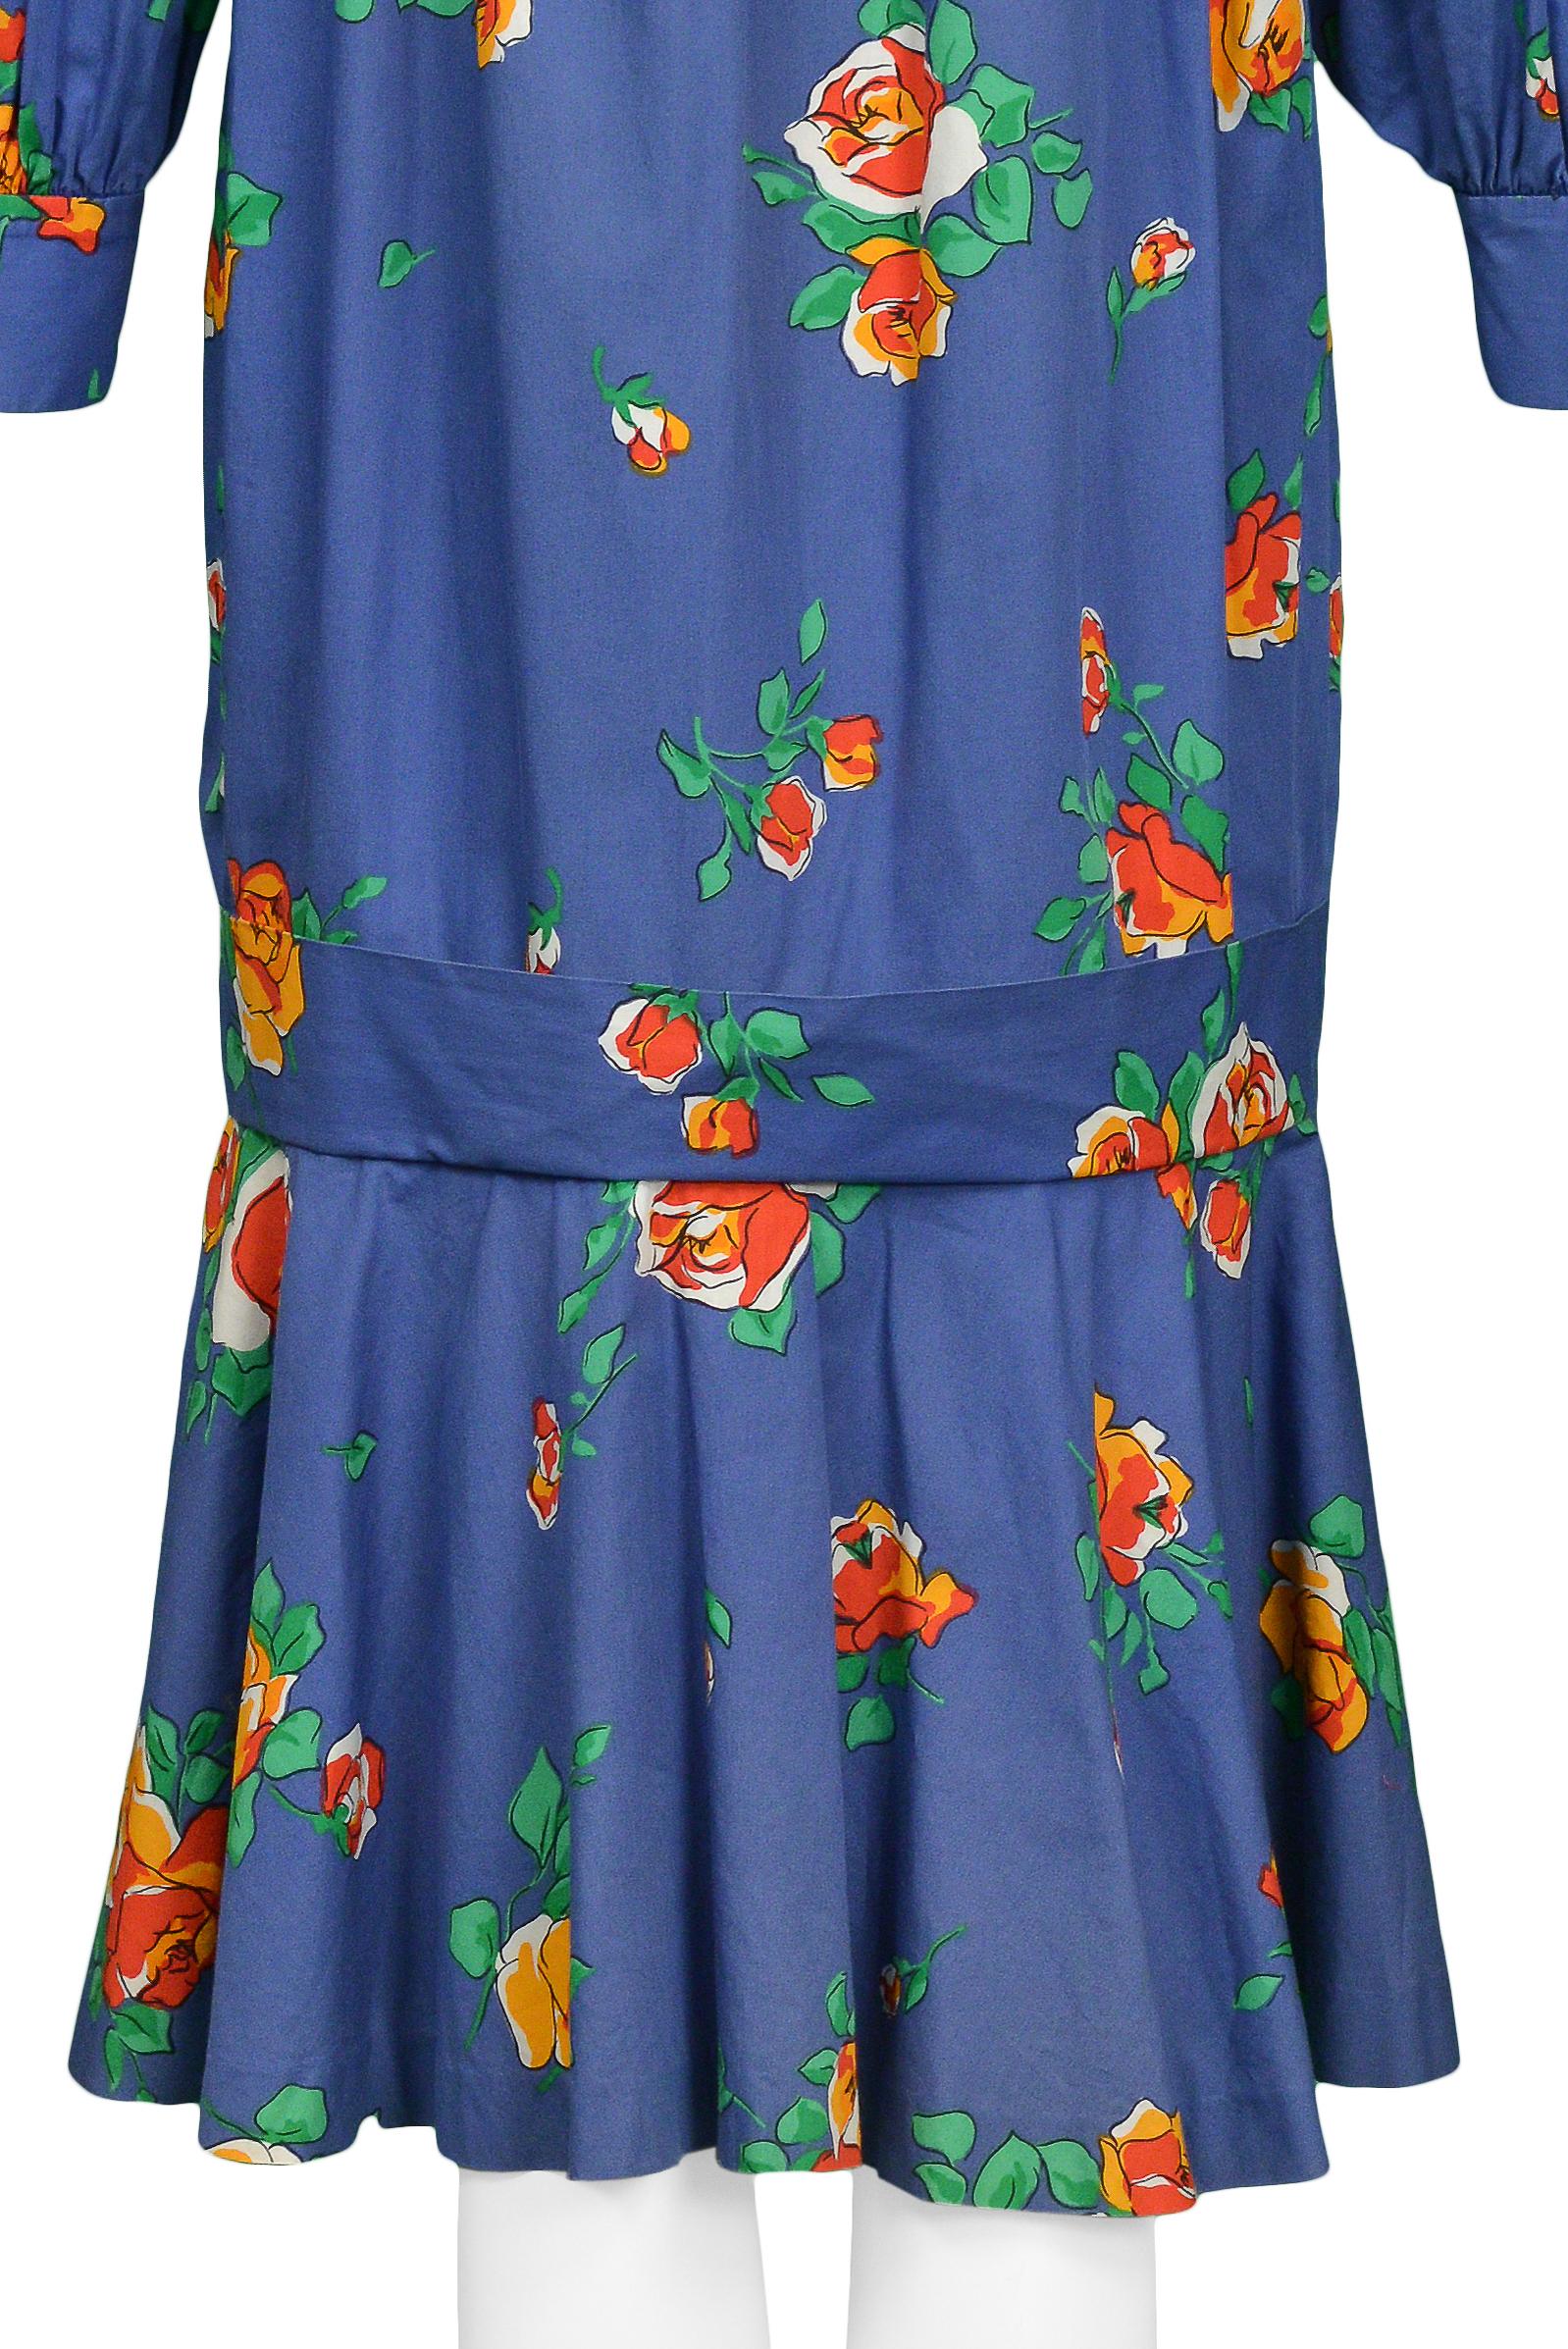 Yves Saint Laurent YSL Blue Floral Drop Dress For Sale 1